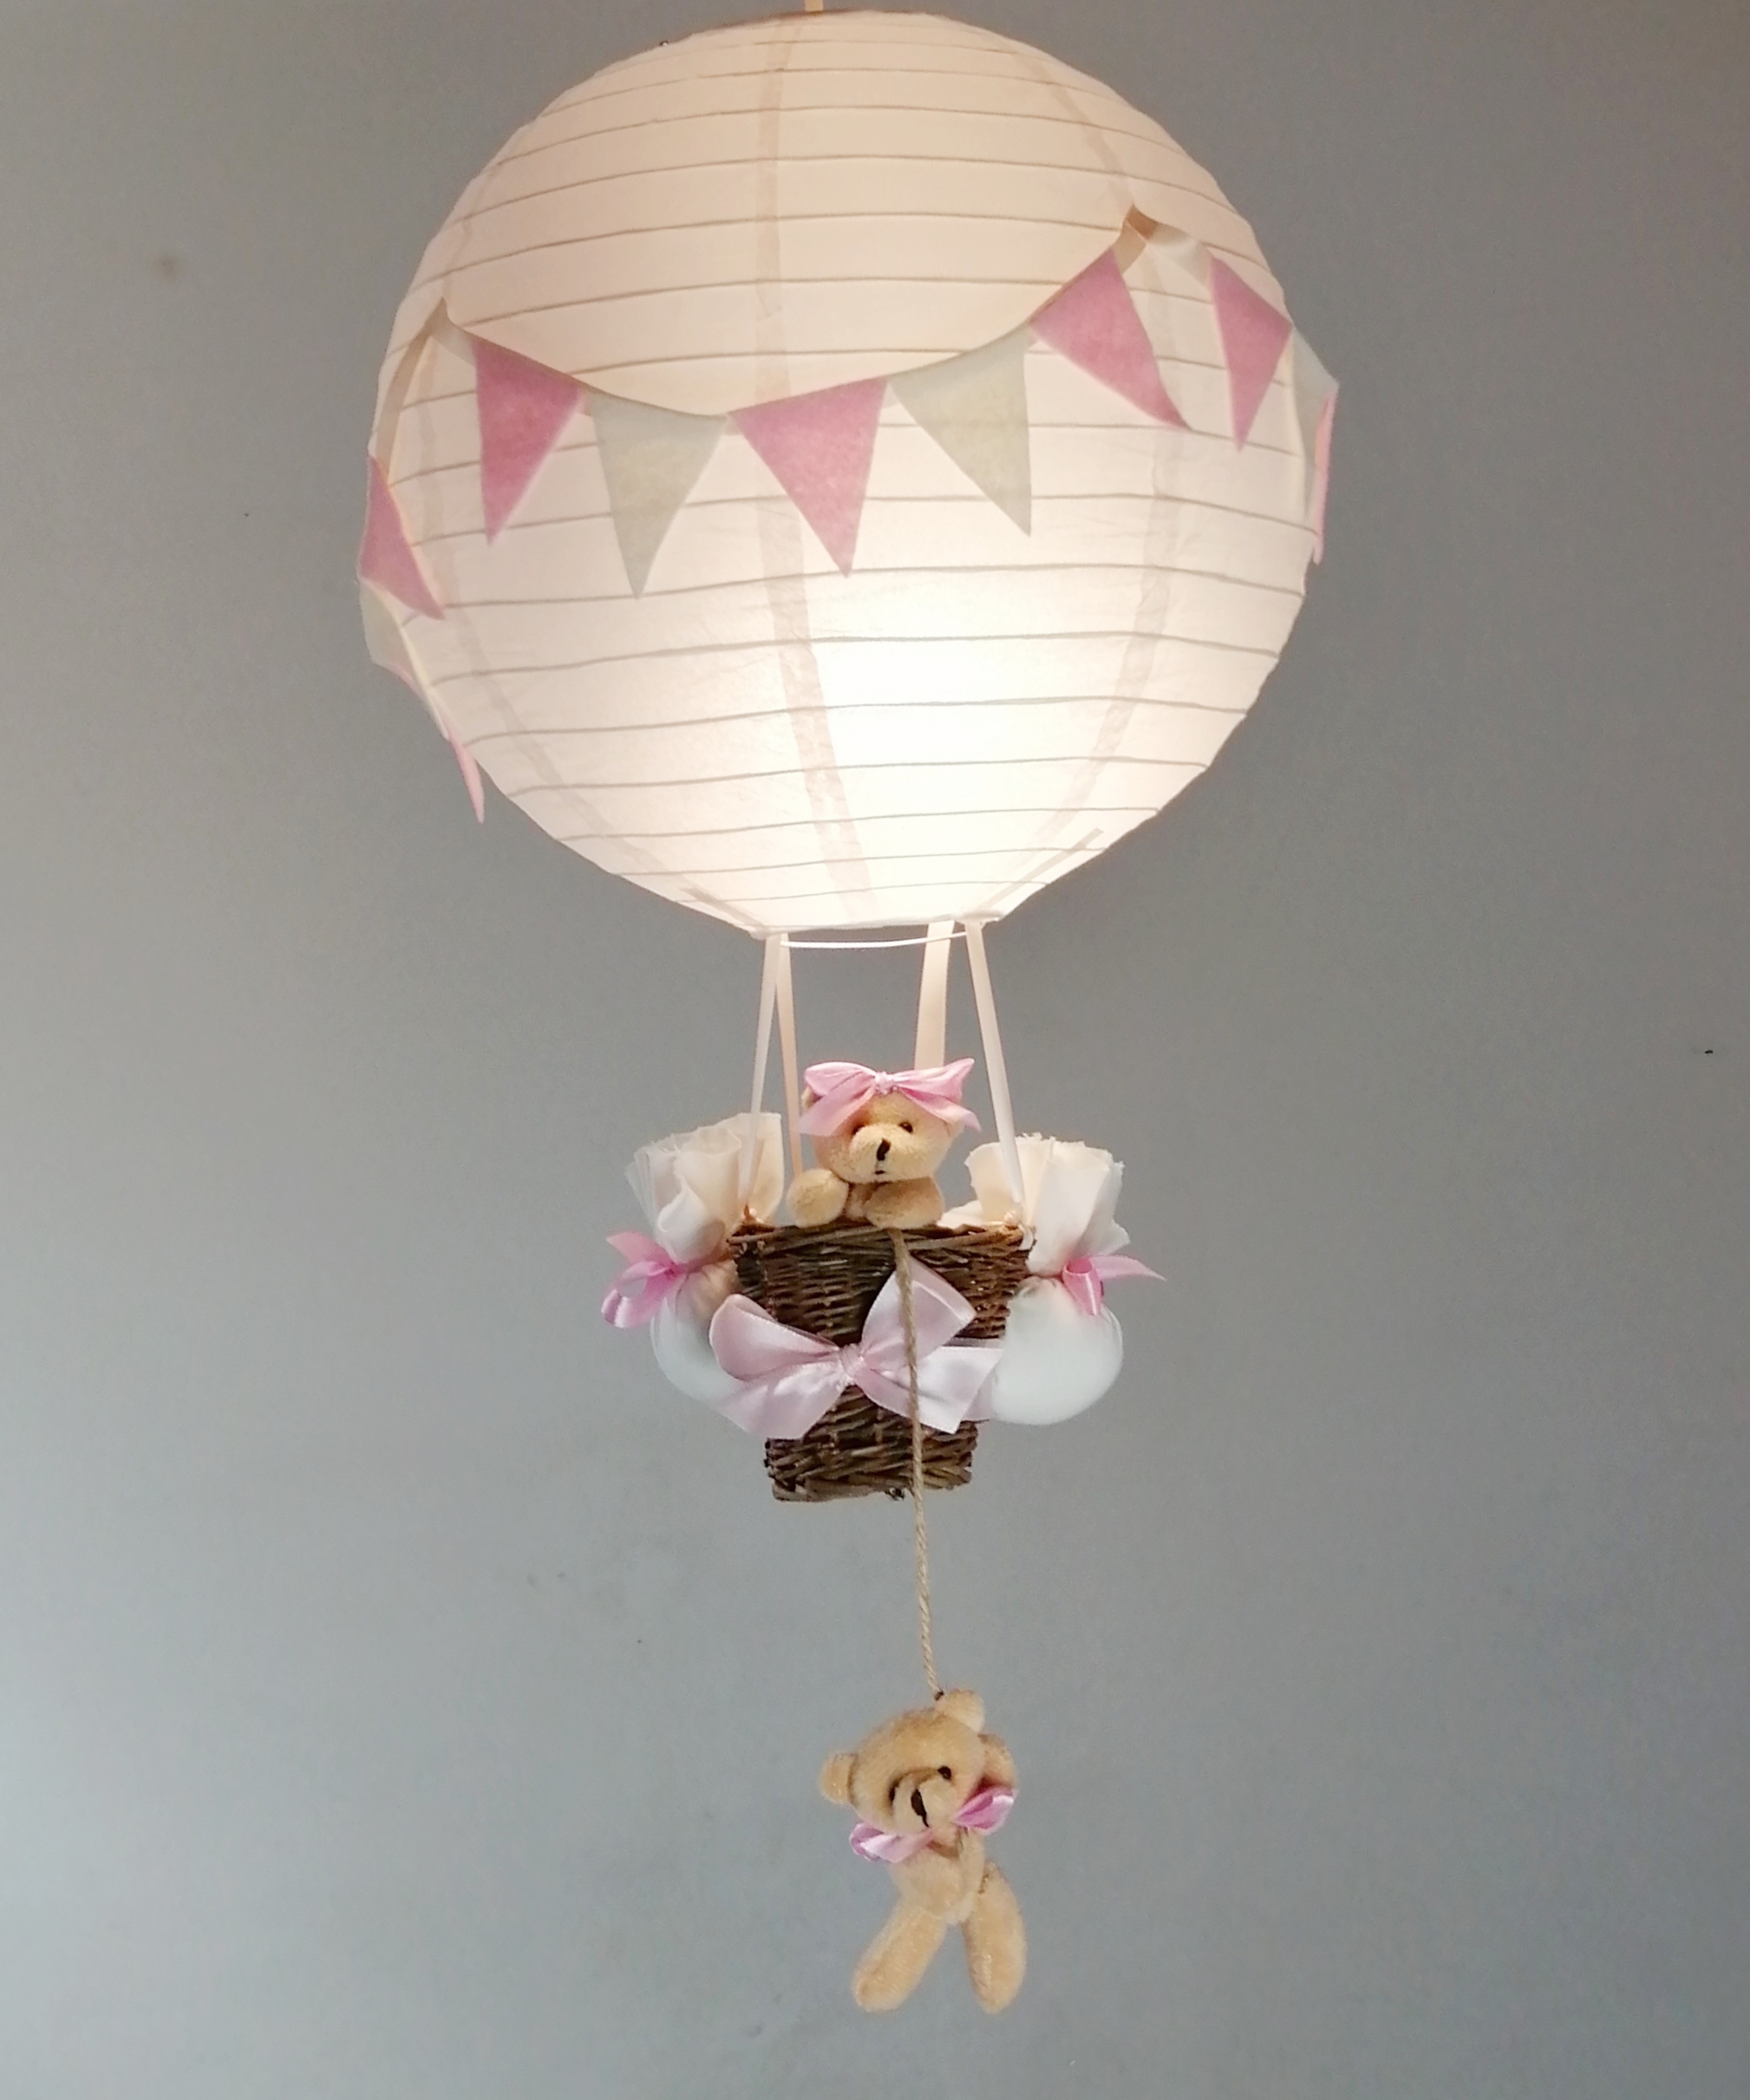 lampe-montgolfiere-fille-luminaire-abat-jour-rose-beige-pastel-fanion-lustre-decoration-lustre